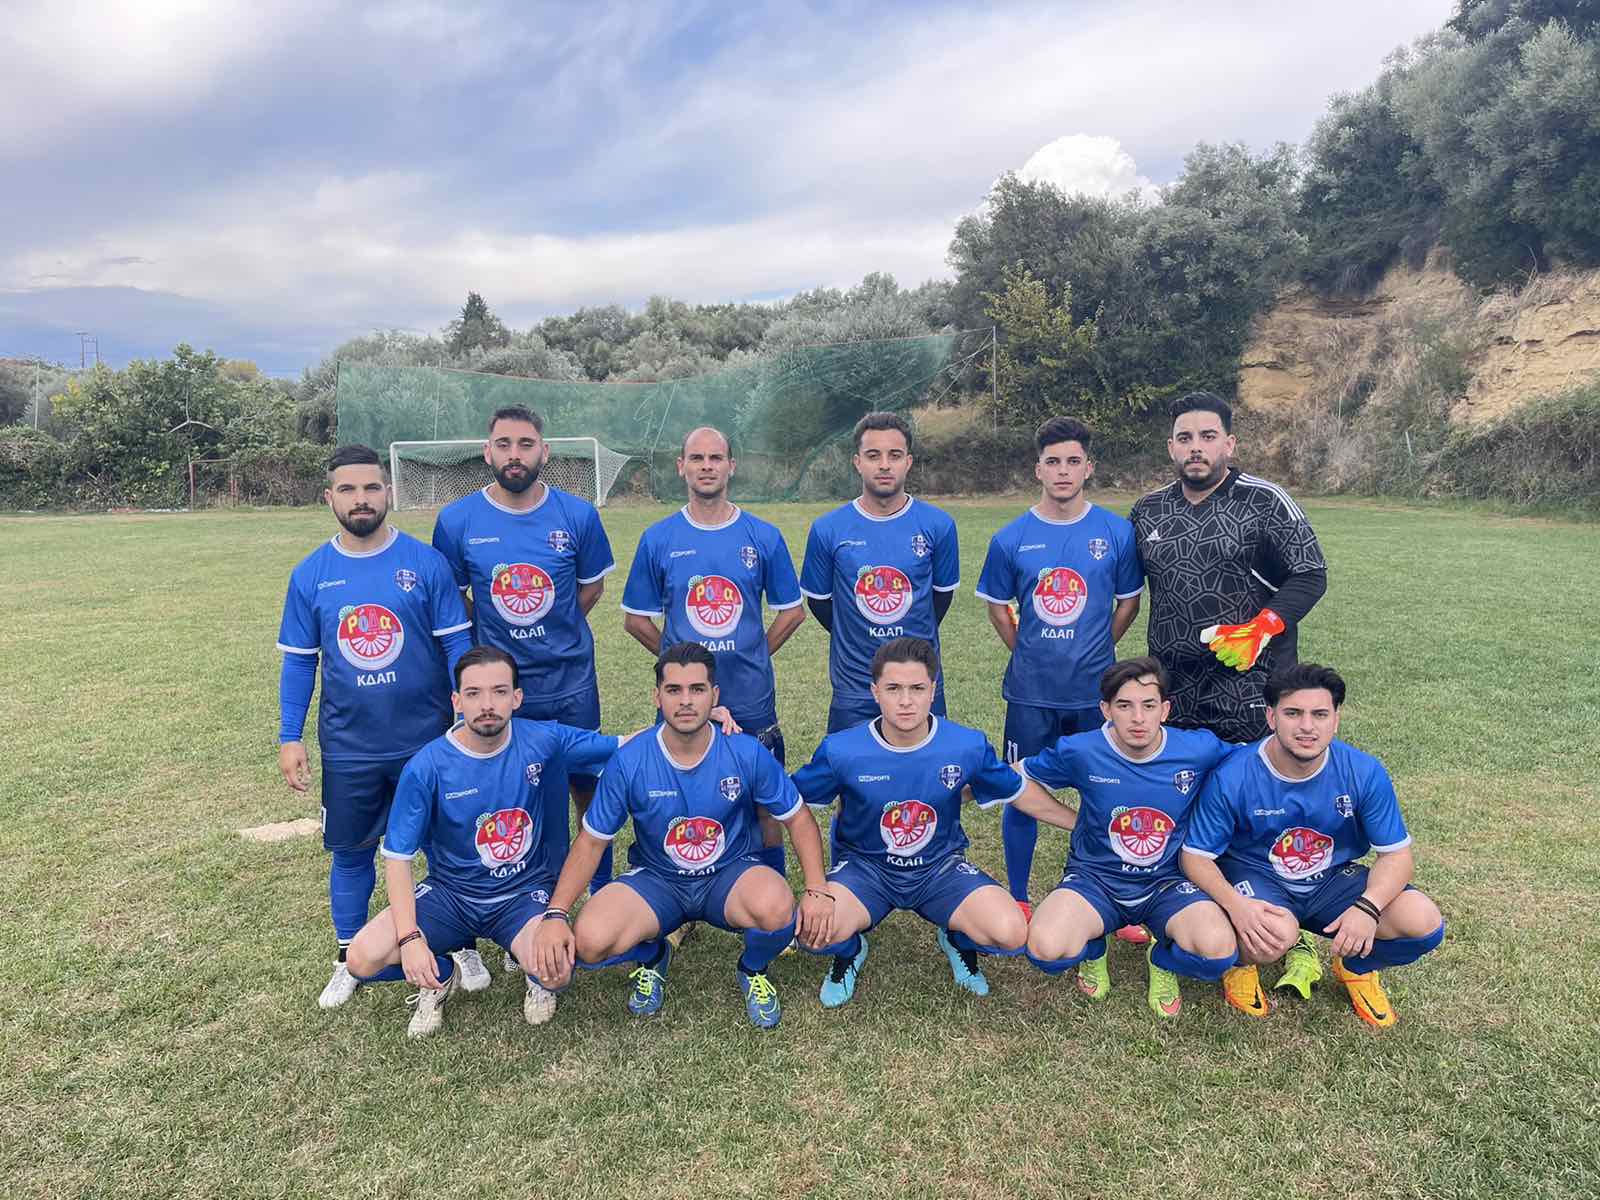 A.Σ. Ρομαϊκός Κάτω Αχαγιάς: Νέος σύλλογος με βαριά αθλητική κληρονομιά